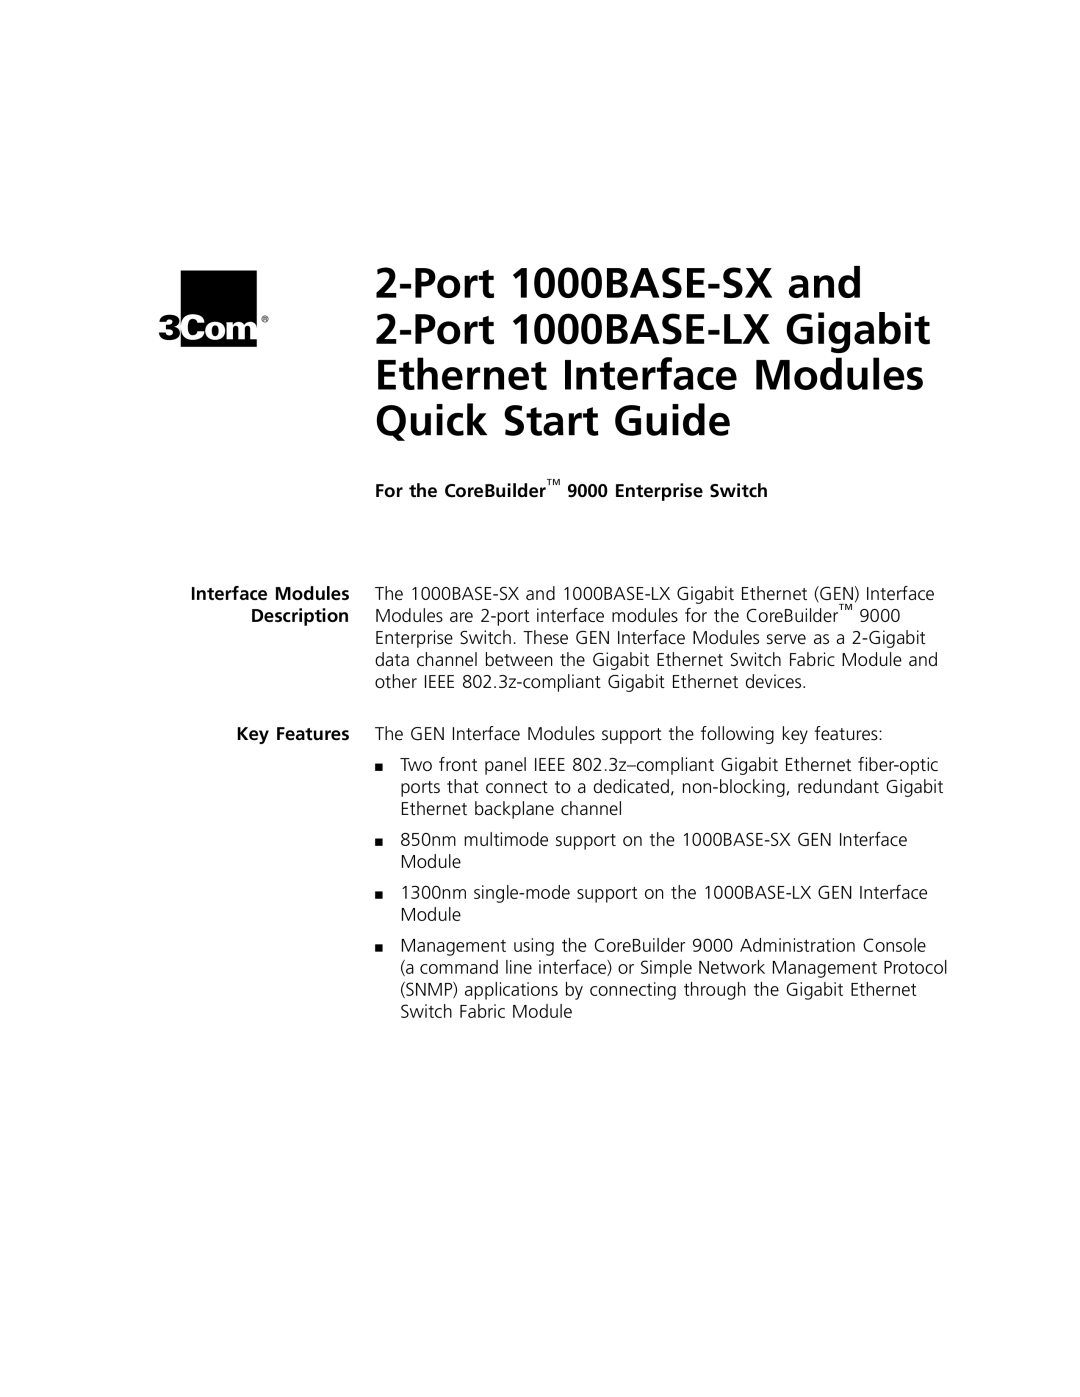 3Com 1000BASE-SX manual GBIC Transceiver Installation Guide, GBIC Fiber-OpticTransceiver 